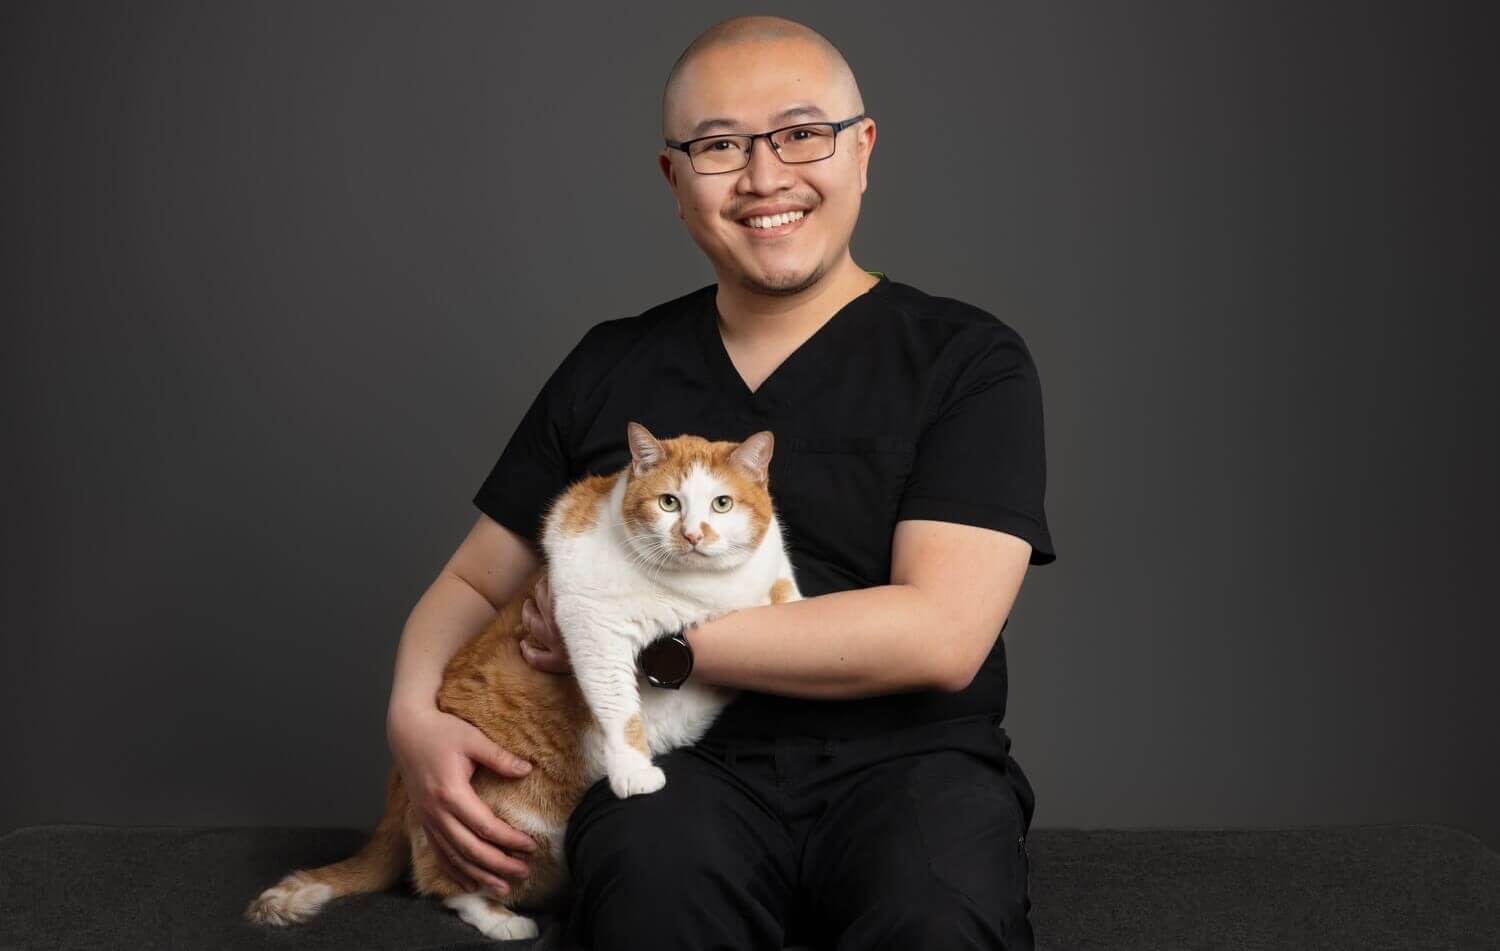 Dr. Chiu